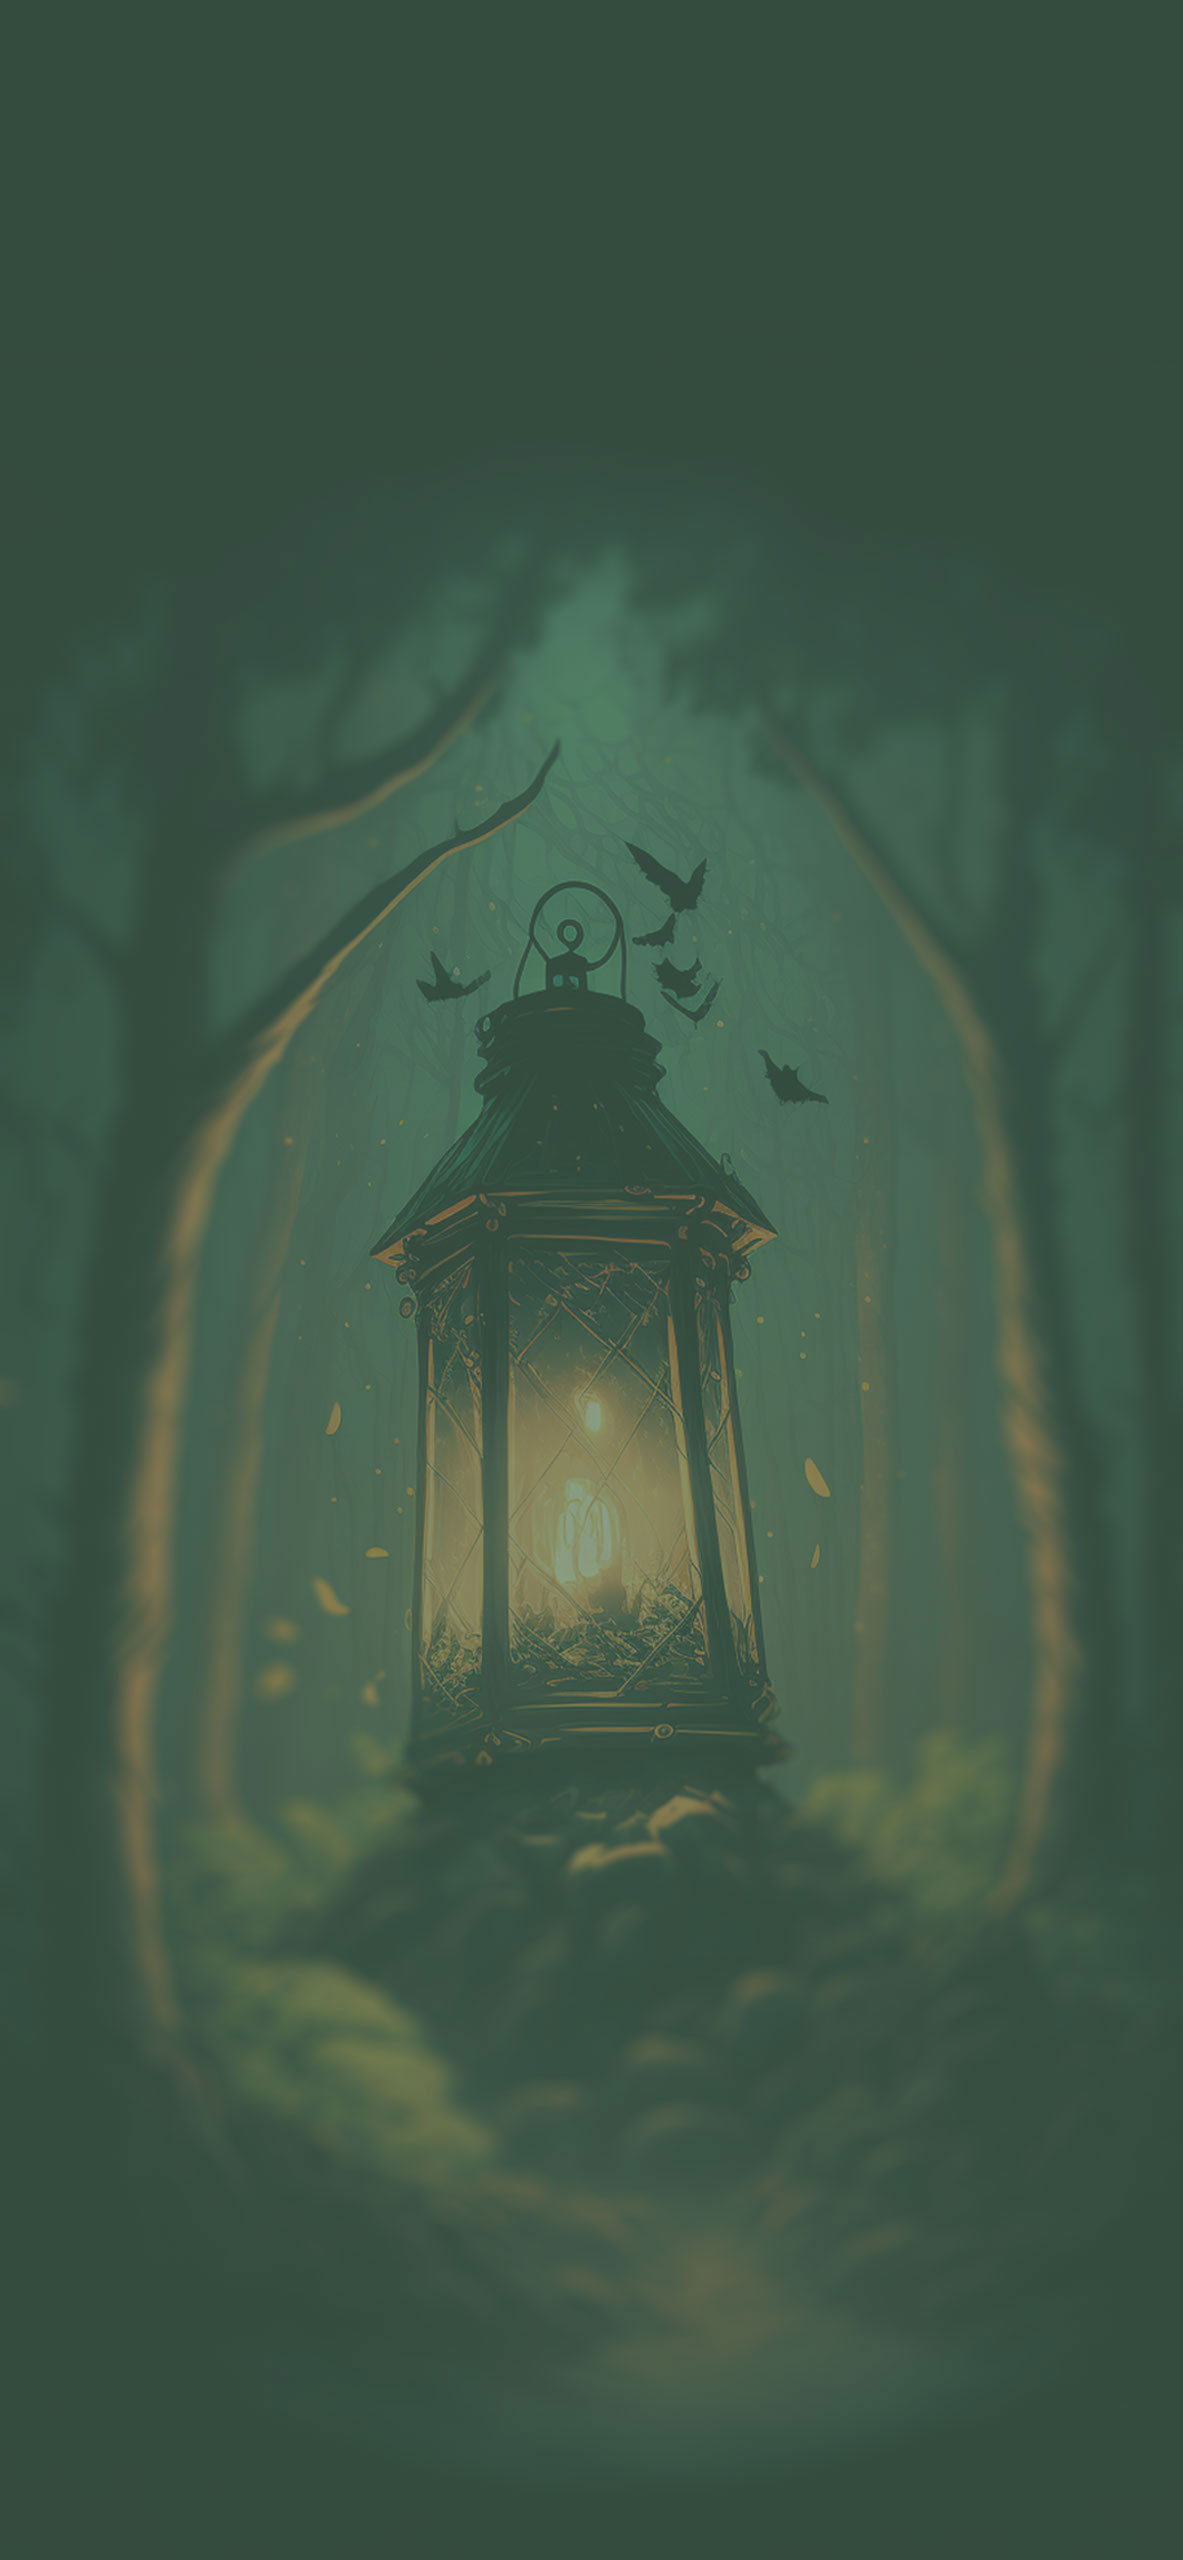 lantern in forest background